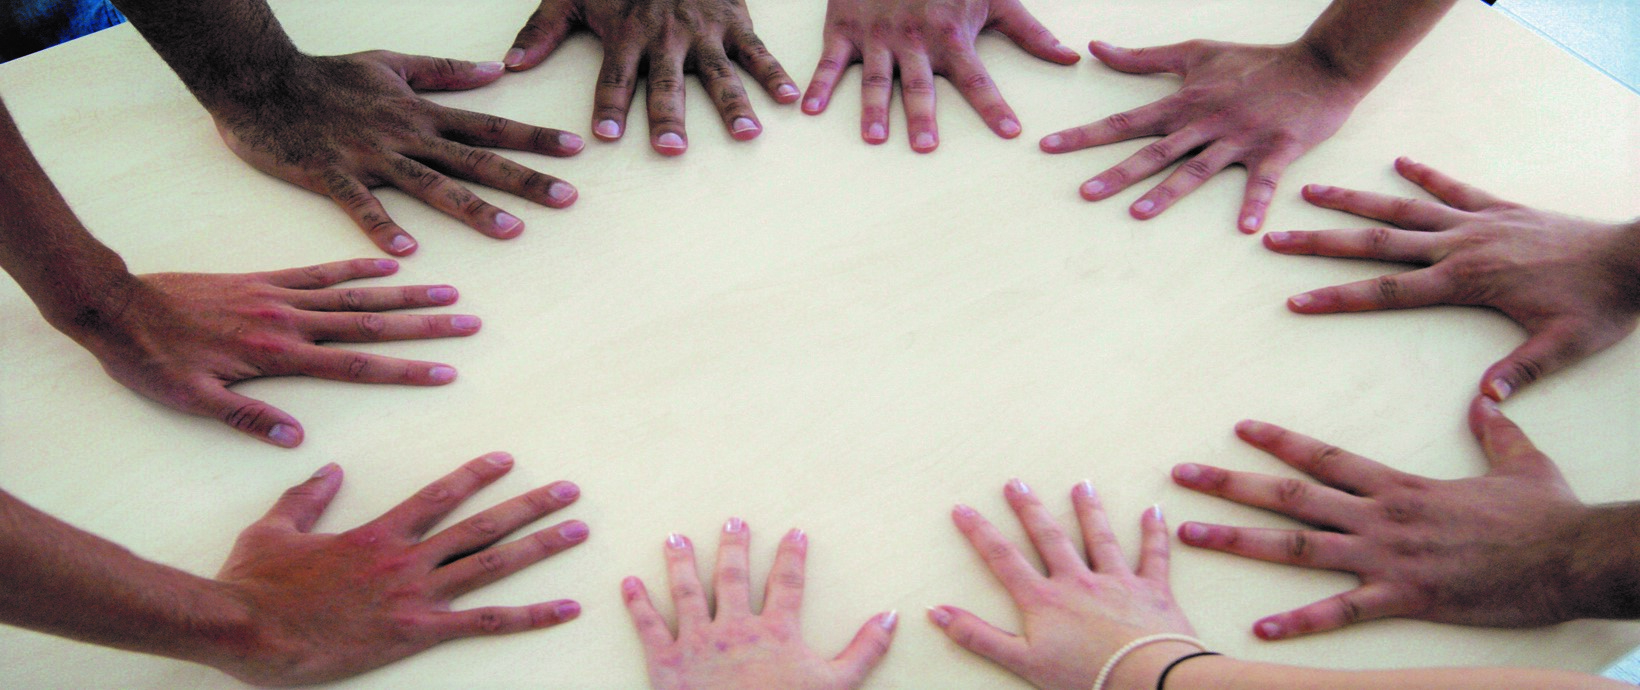 Menschen bilden auf einem Tisch mit ihren Händen einen Kreis